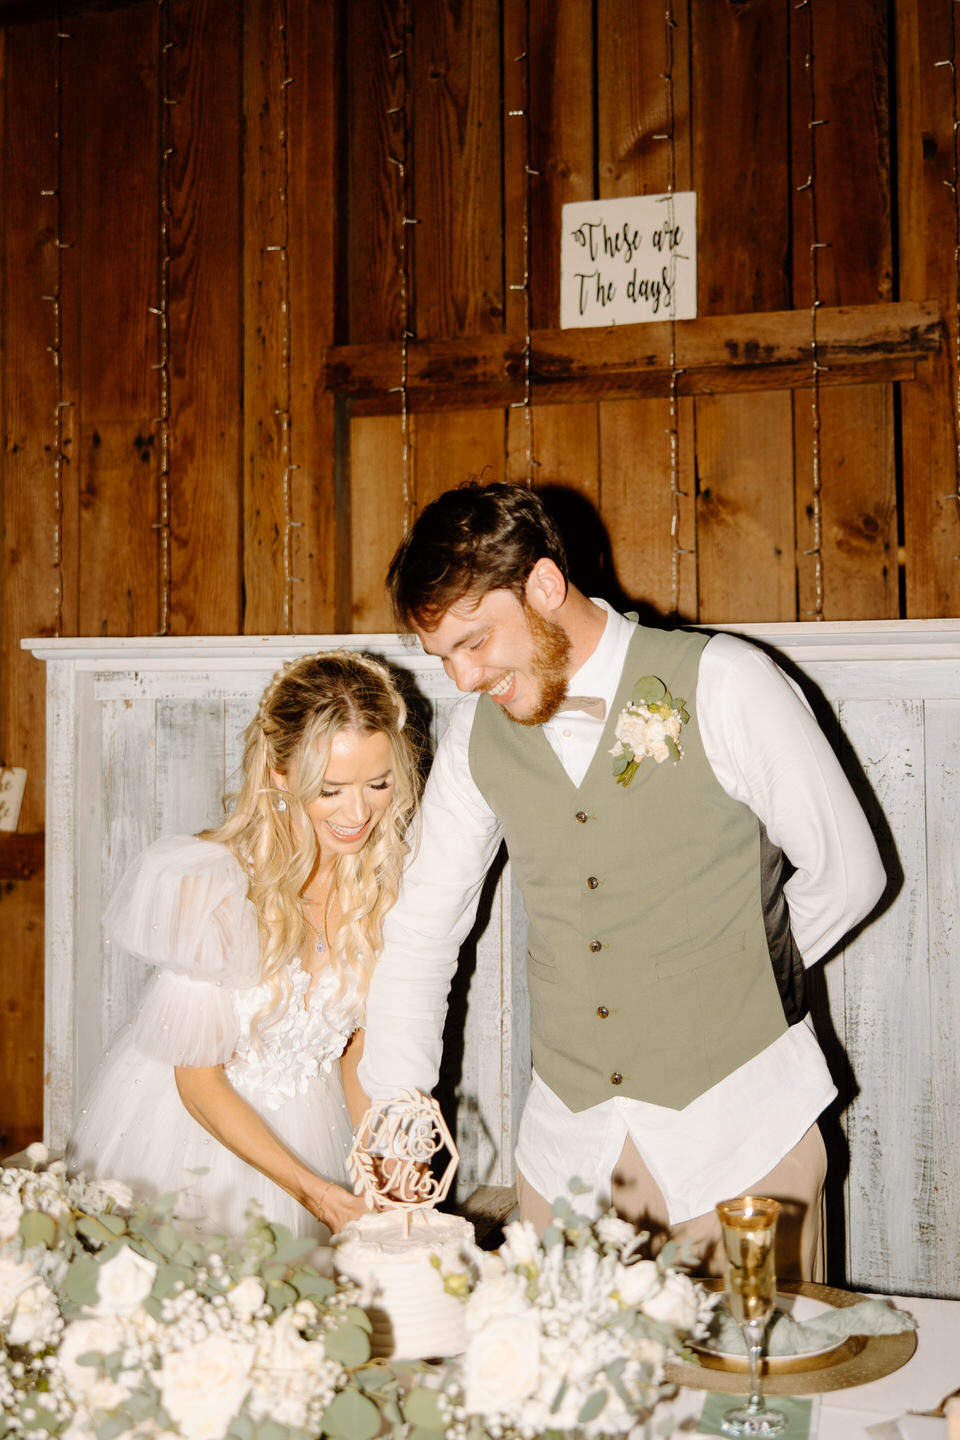 Cake cutting in a rustic barn wedding reception